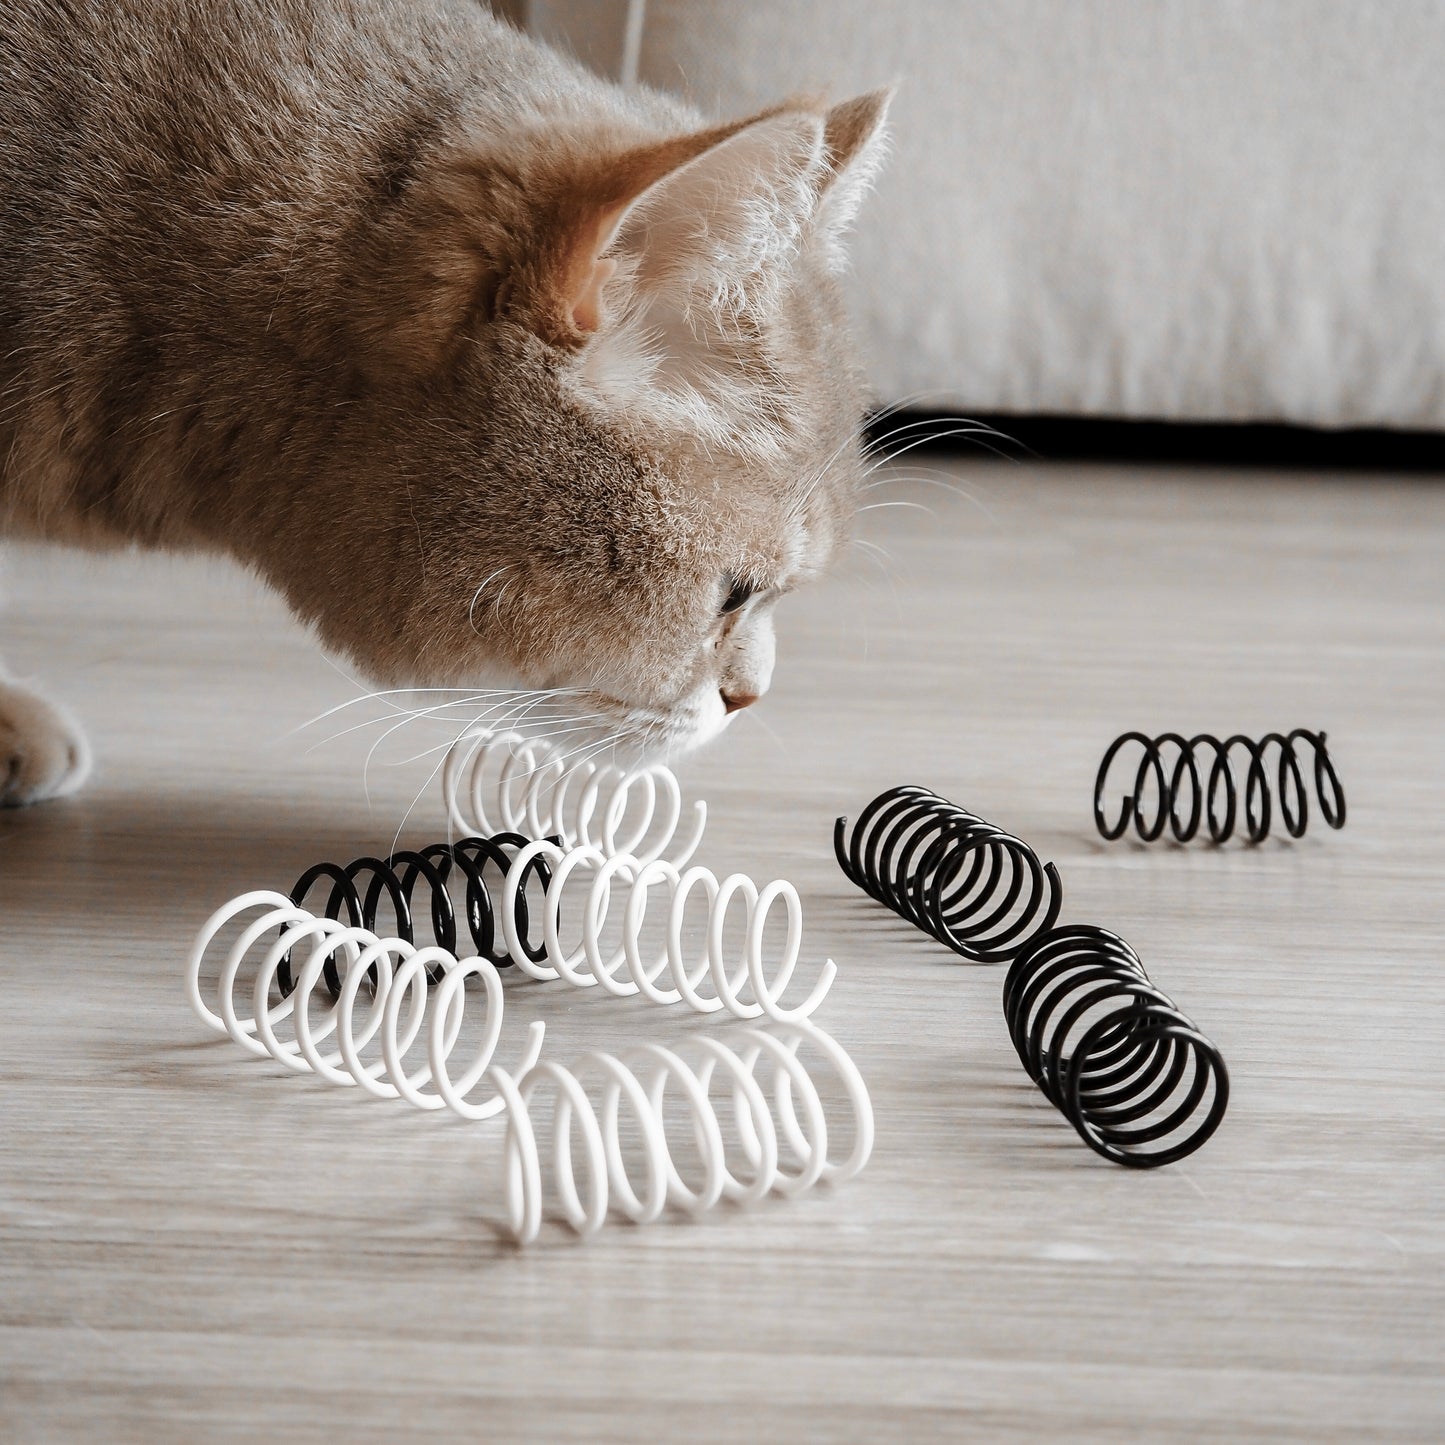 Katze schnuppert an Spiralfeder Spielzeug für Katzen in schwarz und weiß.